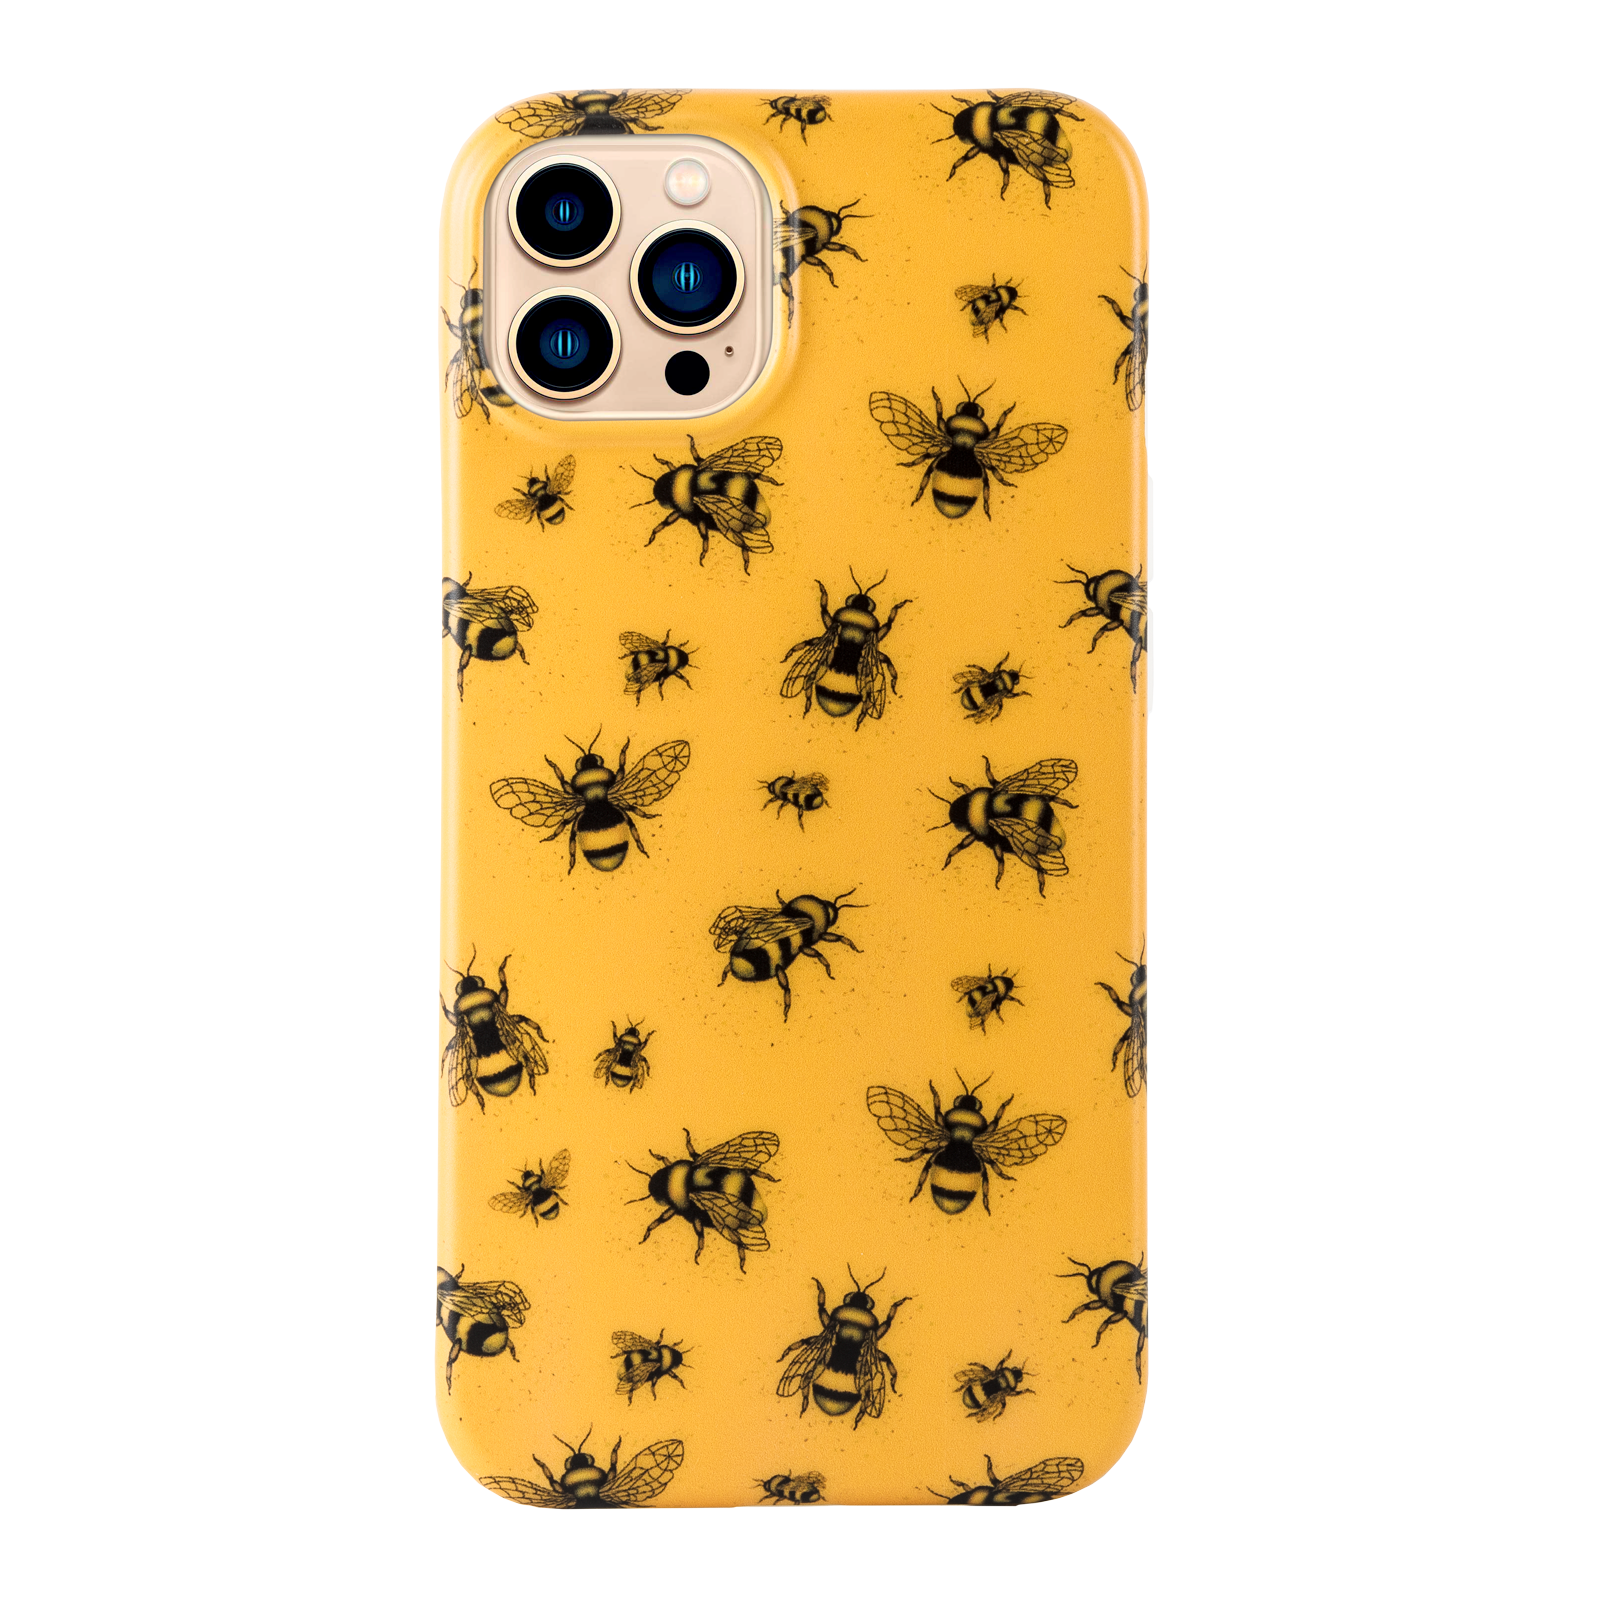 iPhone-Hülle mit Bienenmuster